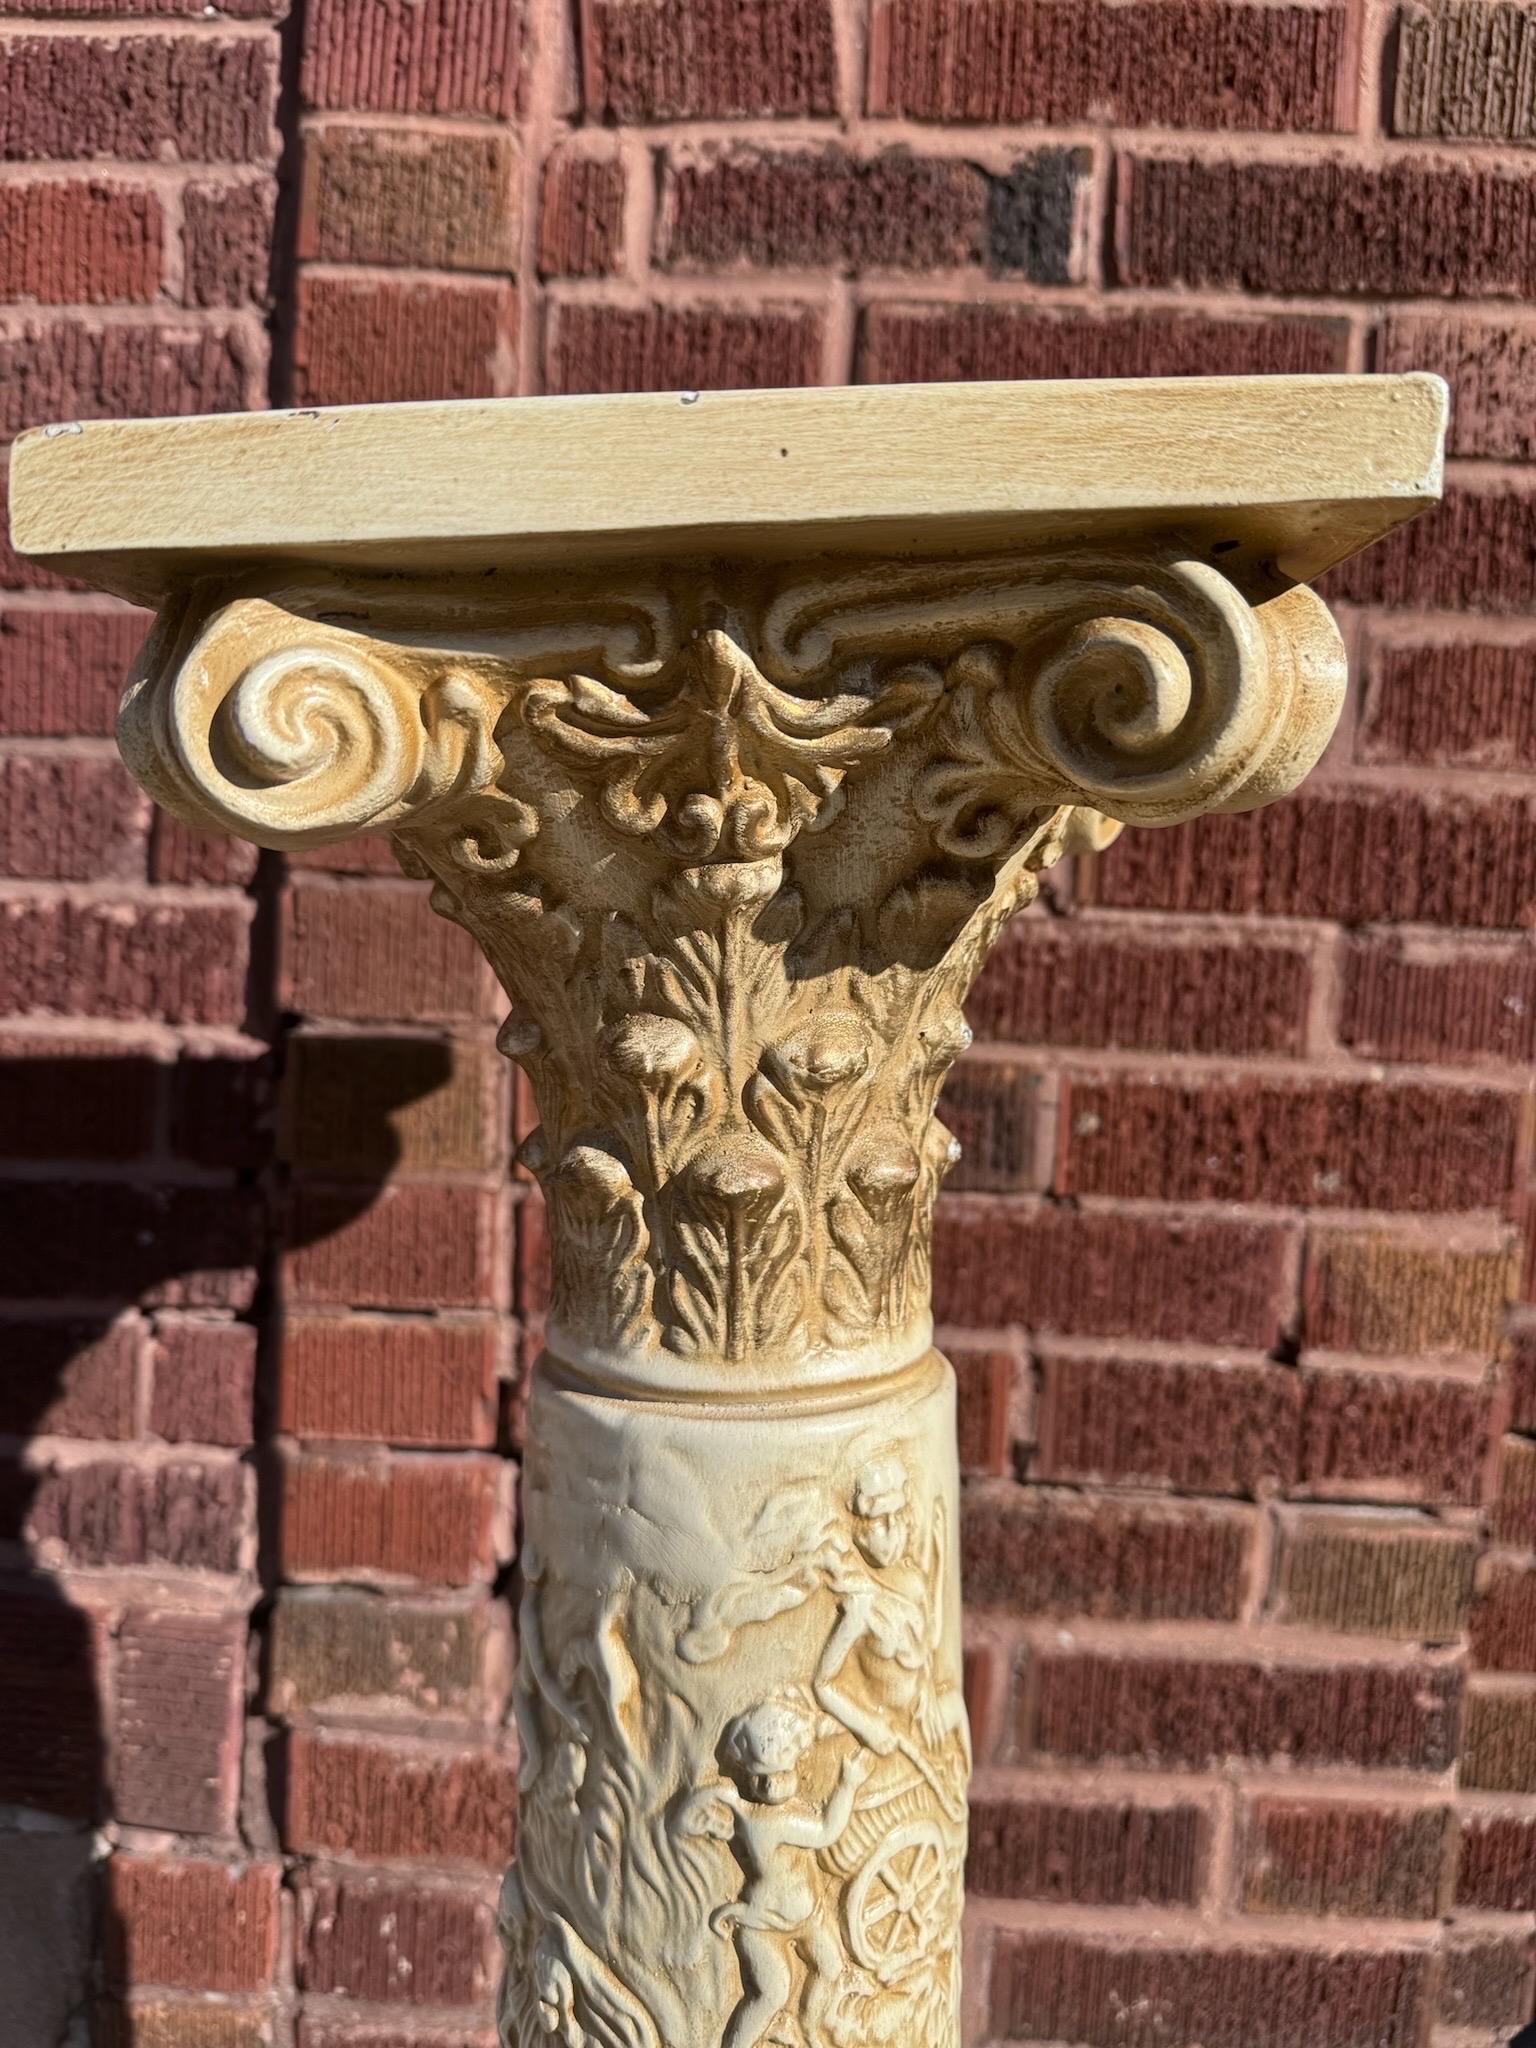 Vintage 20th Century Neoclassical Roman Style Column Stand/Pedestal

Ce piédestal italien orné présente un beau chapiteau à feuilles d'acanthe et une scène mythique sculptée sur la face de la colonne. La scène figurative du pilier contient de